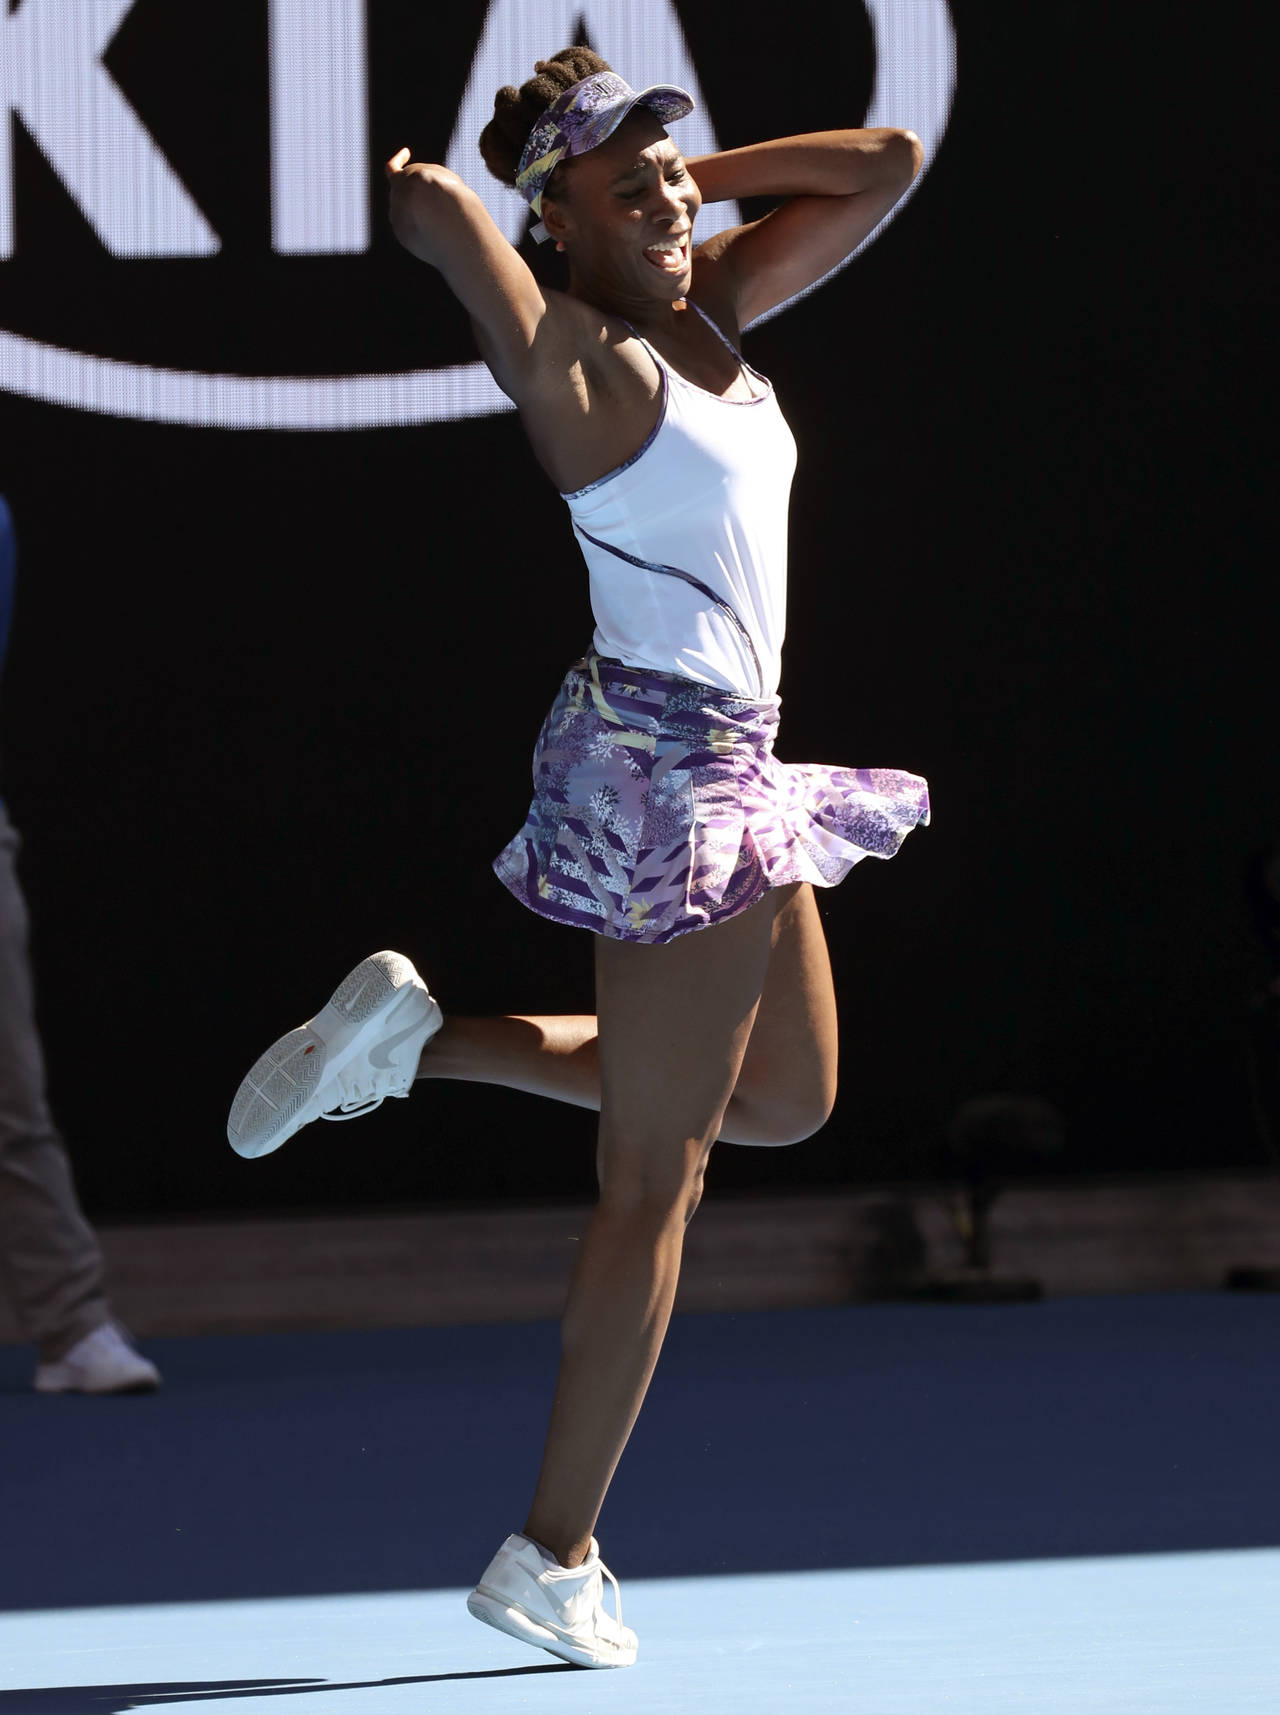 Venus Williams celebra luego de vencer 6-7, 6-2, 6-3 a Coco Vandeweghe. Jugará la final ante Serena, quien ganó 6-2, 6-1 a Lucic-Baroni. (AP)